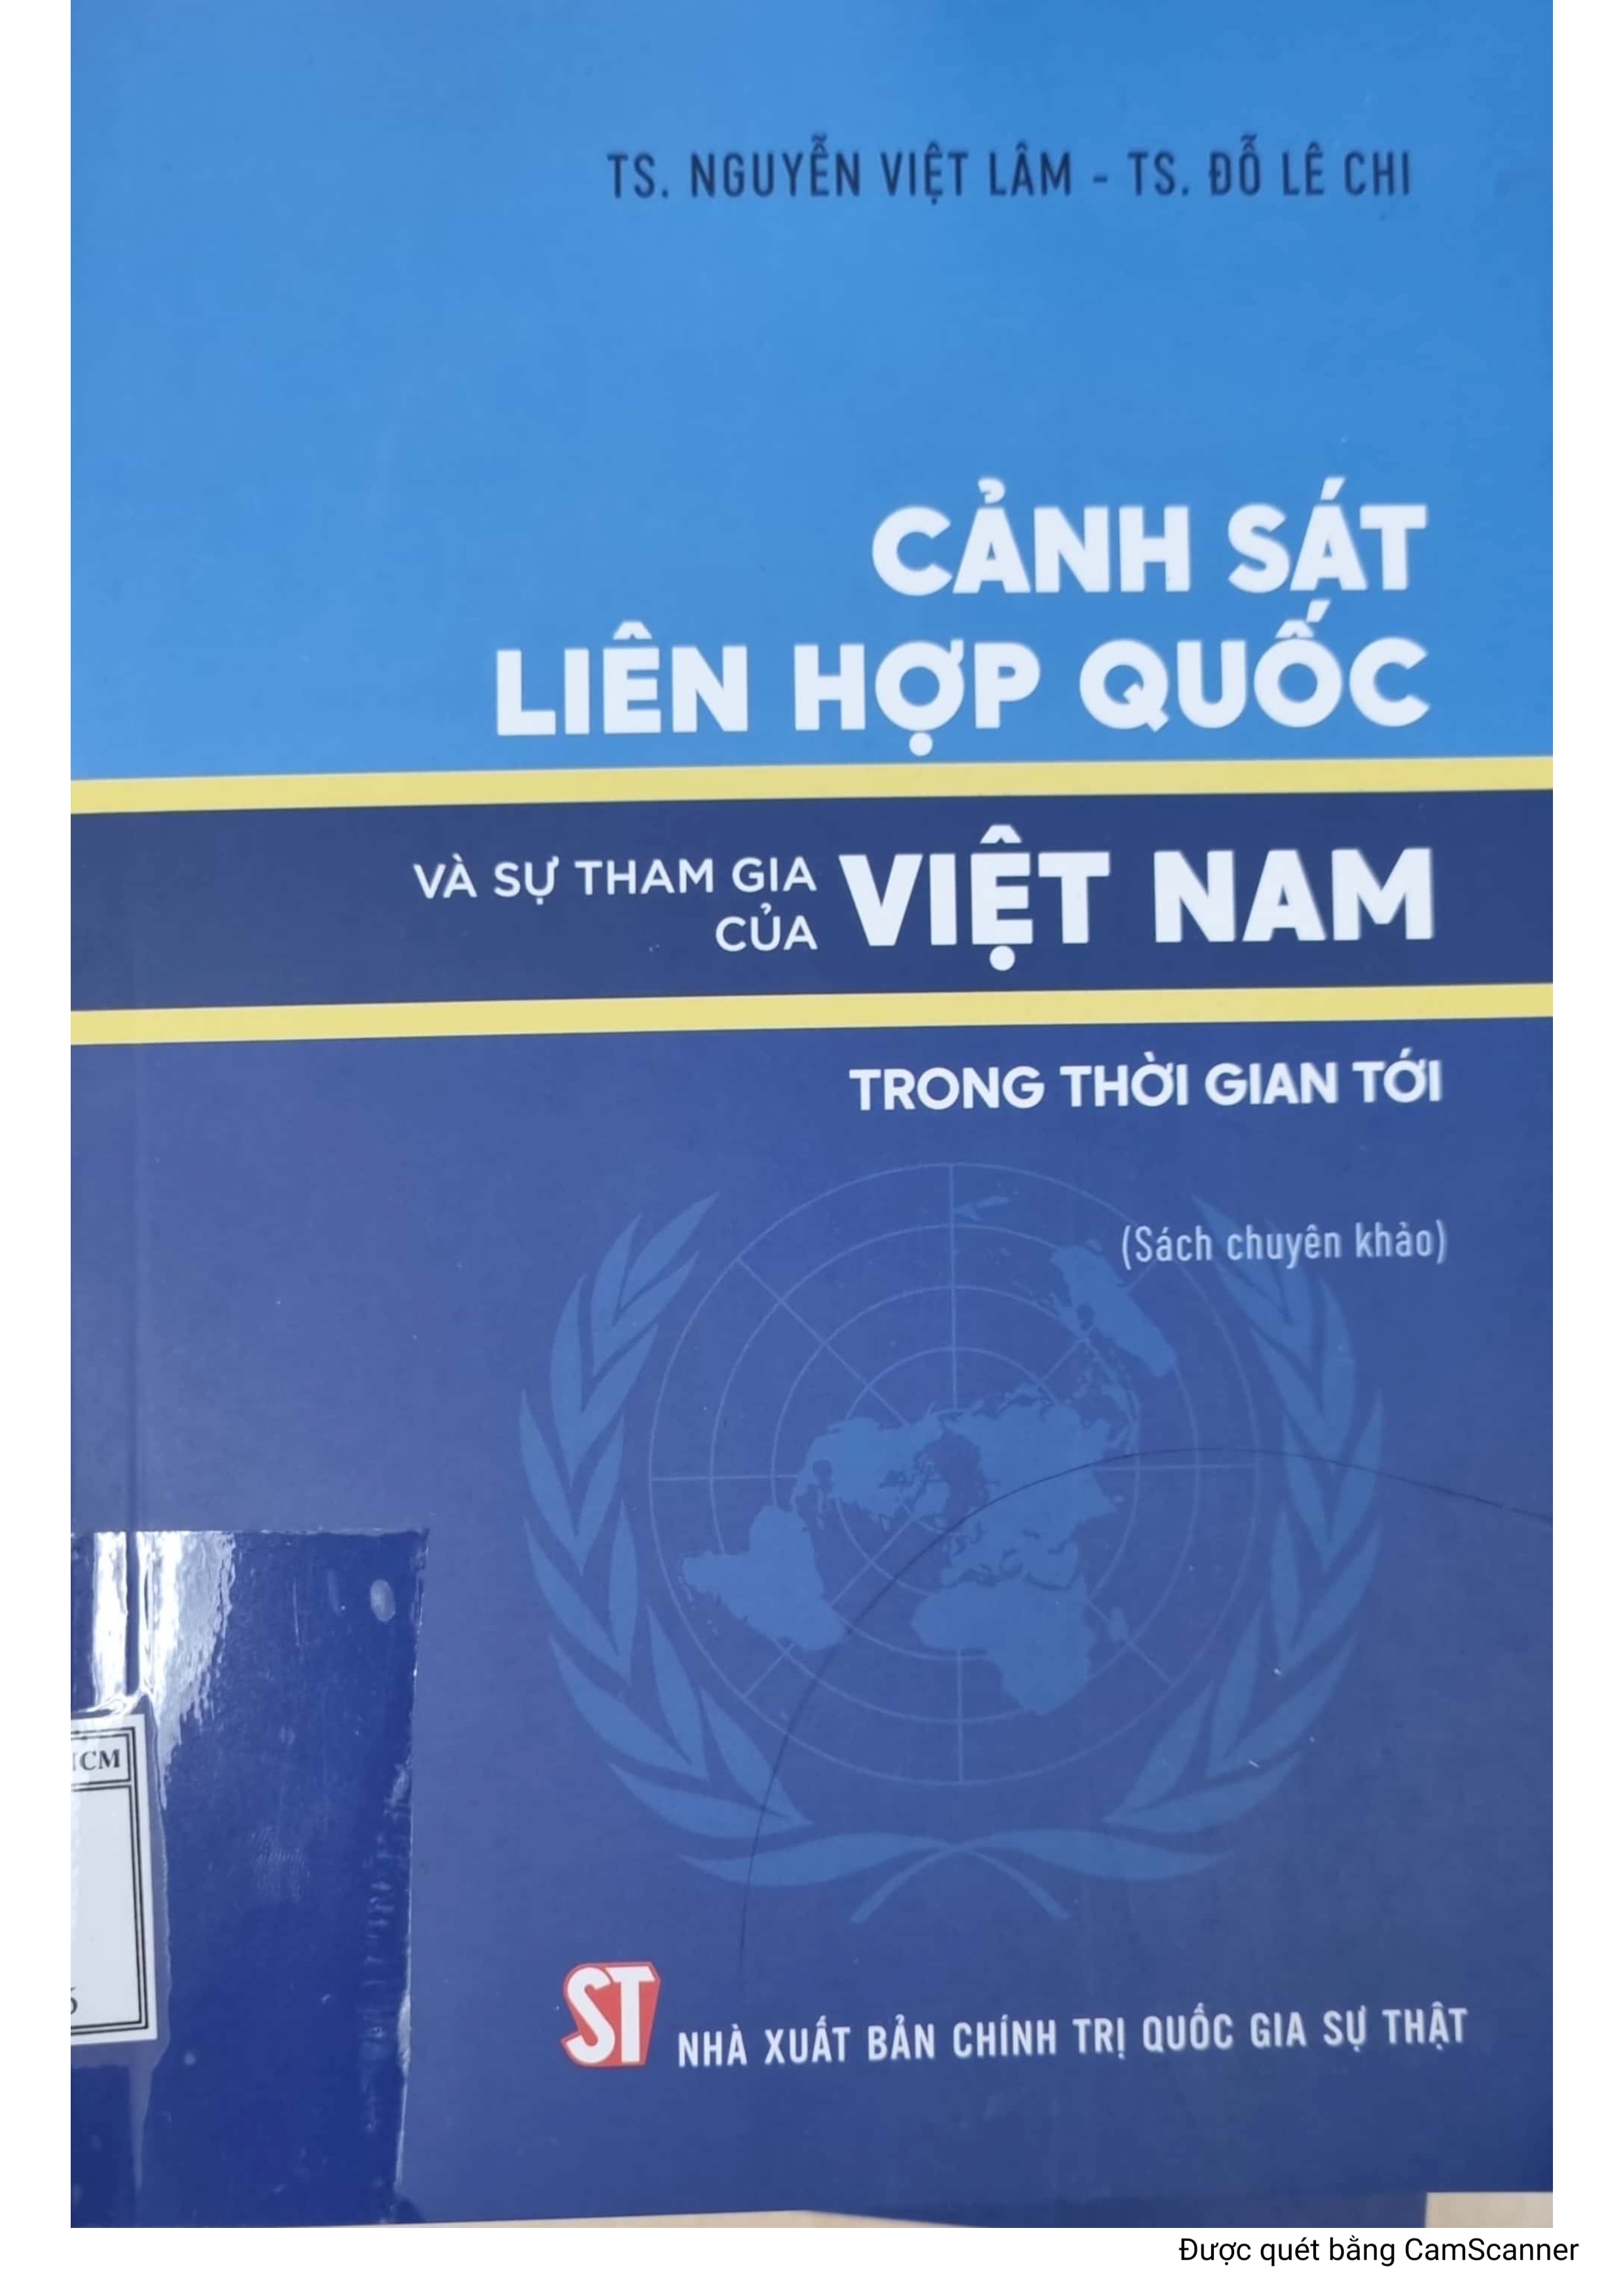 Cảnh sát liên hợp quốc và sự tham gia của Việt Nam trong thời gian tới